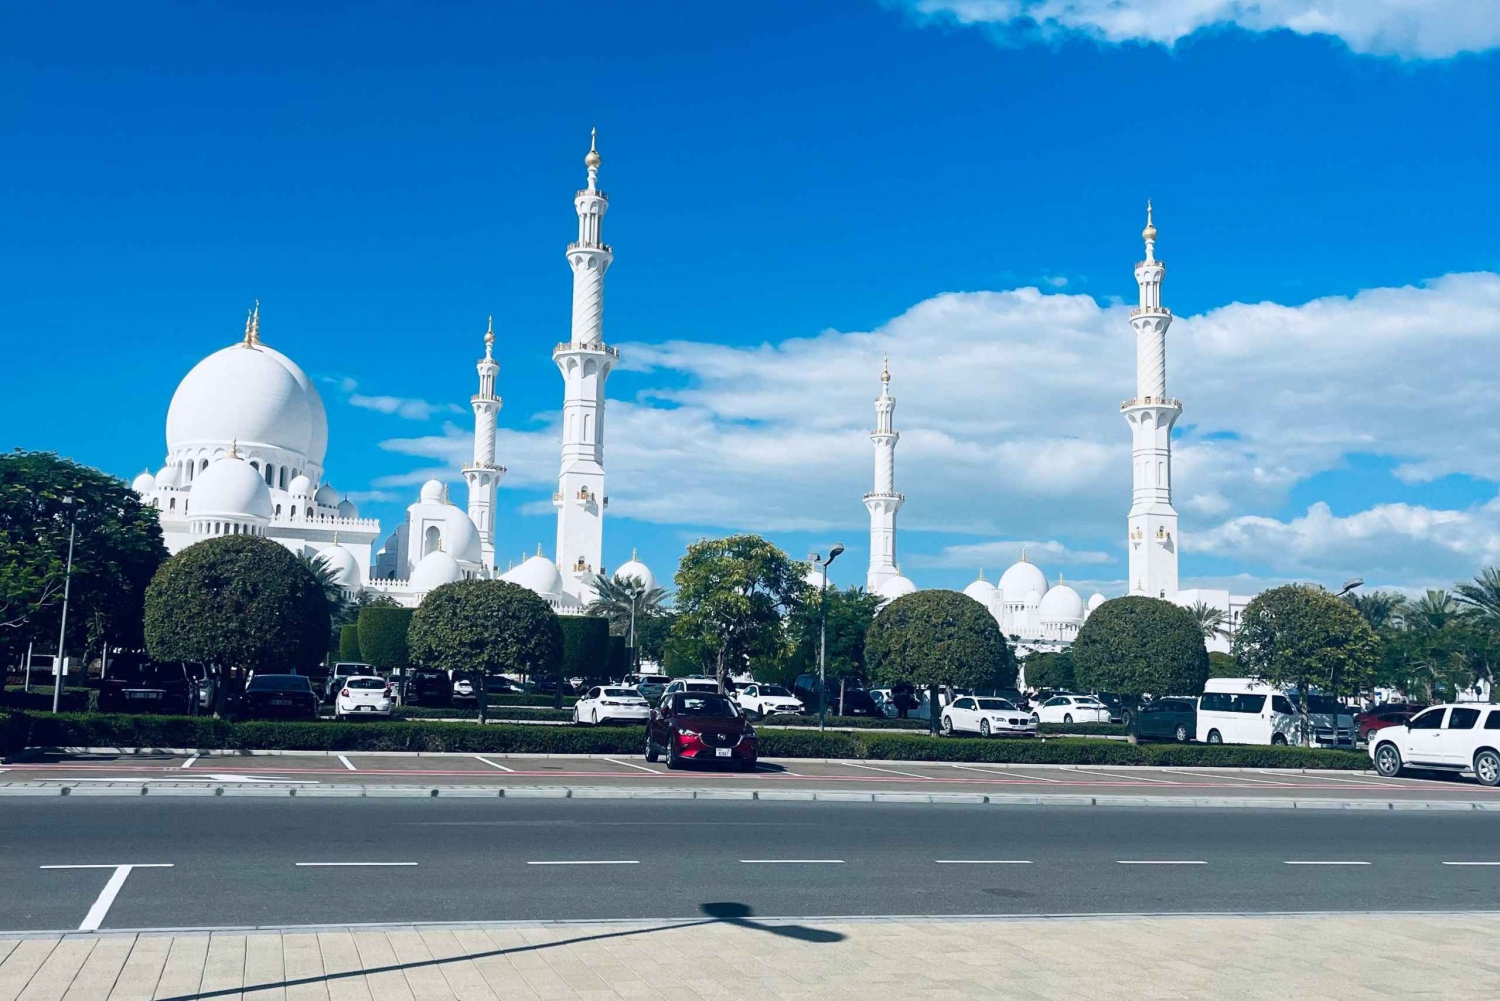 Excursão de 1 dia pela cidade de Abu Dhabi com guia. Excursão de 1 dia pela cidade de Abu Dhabi